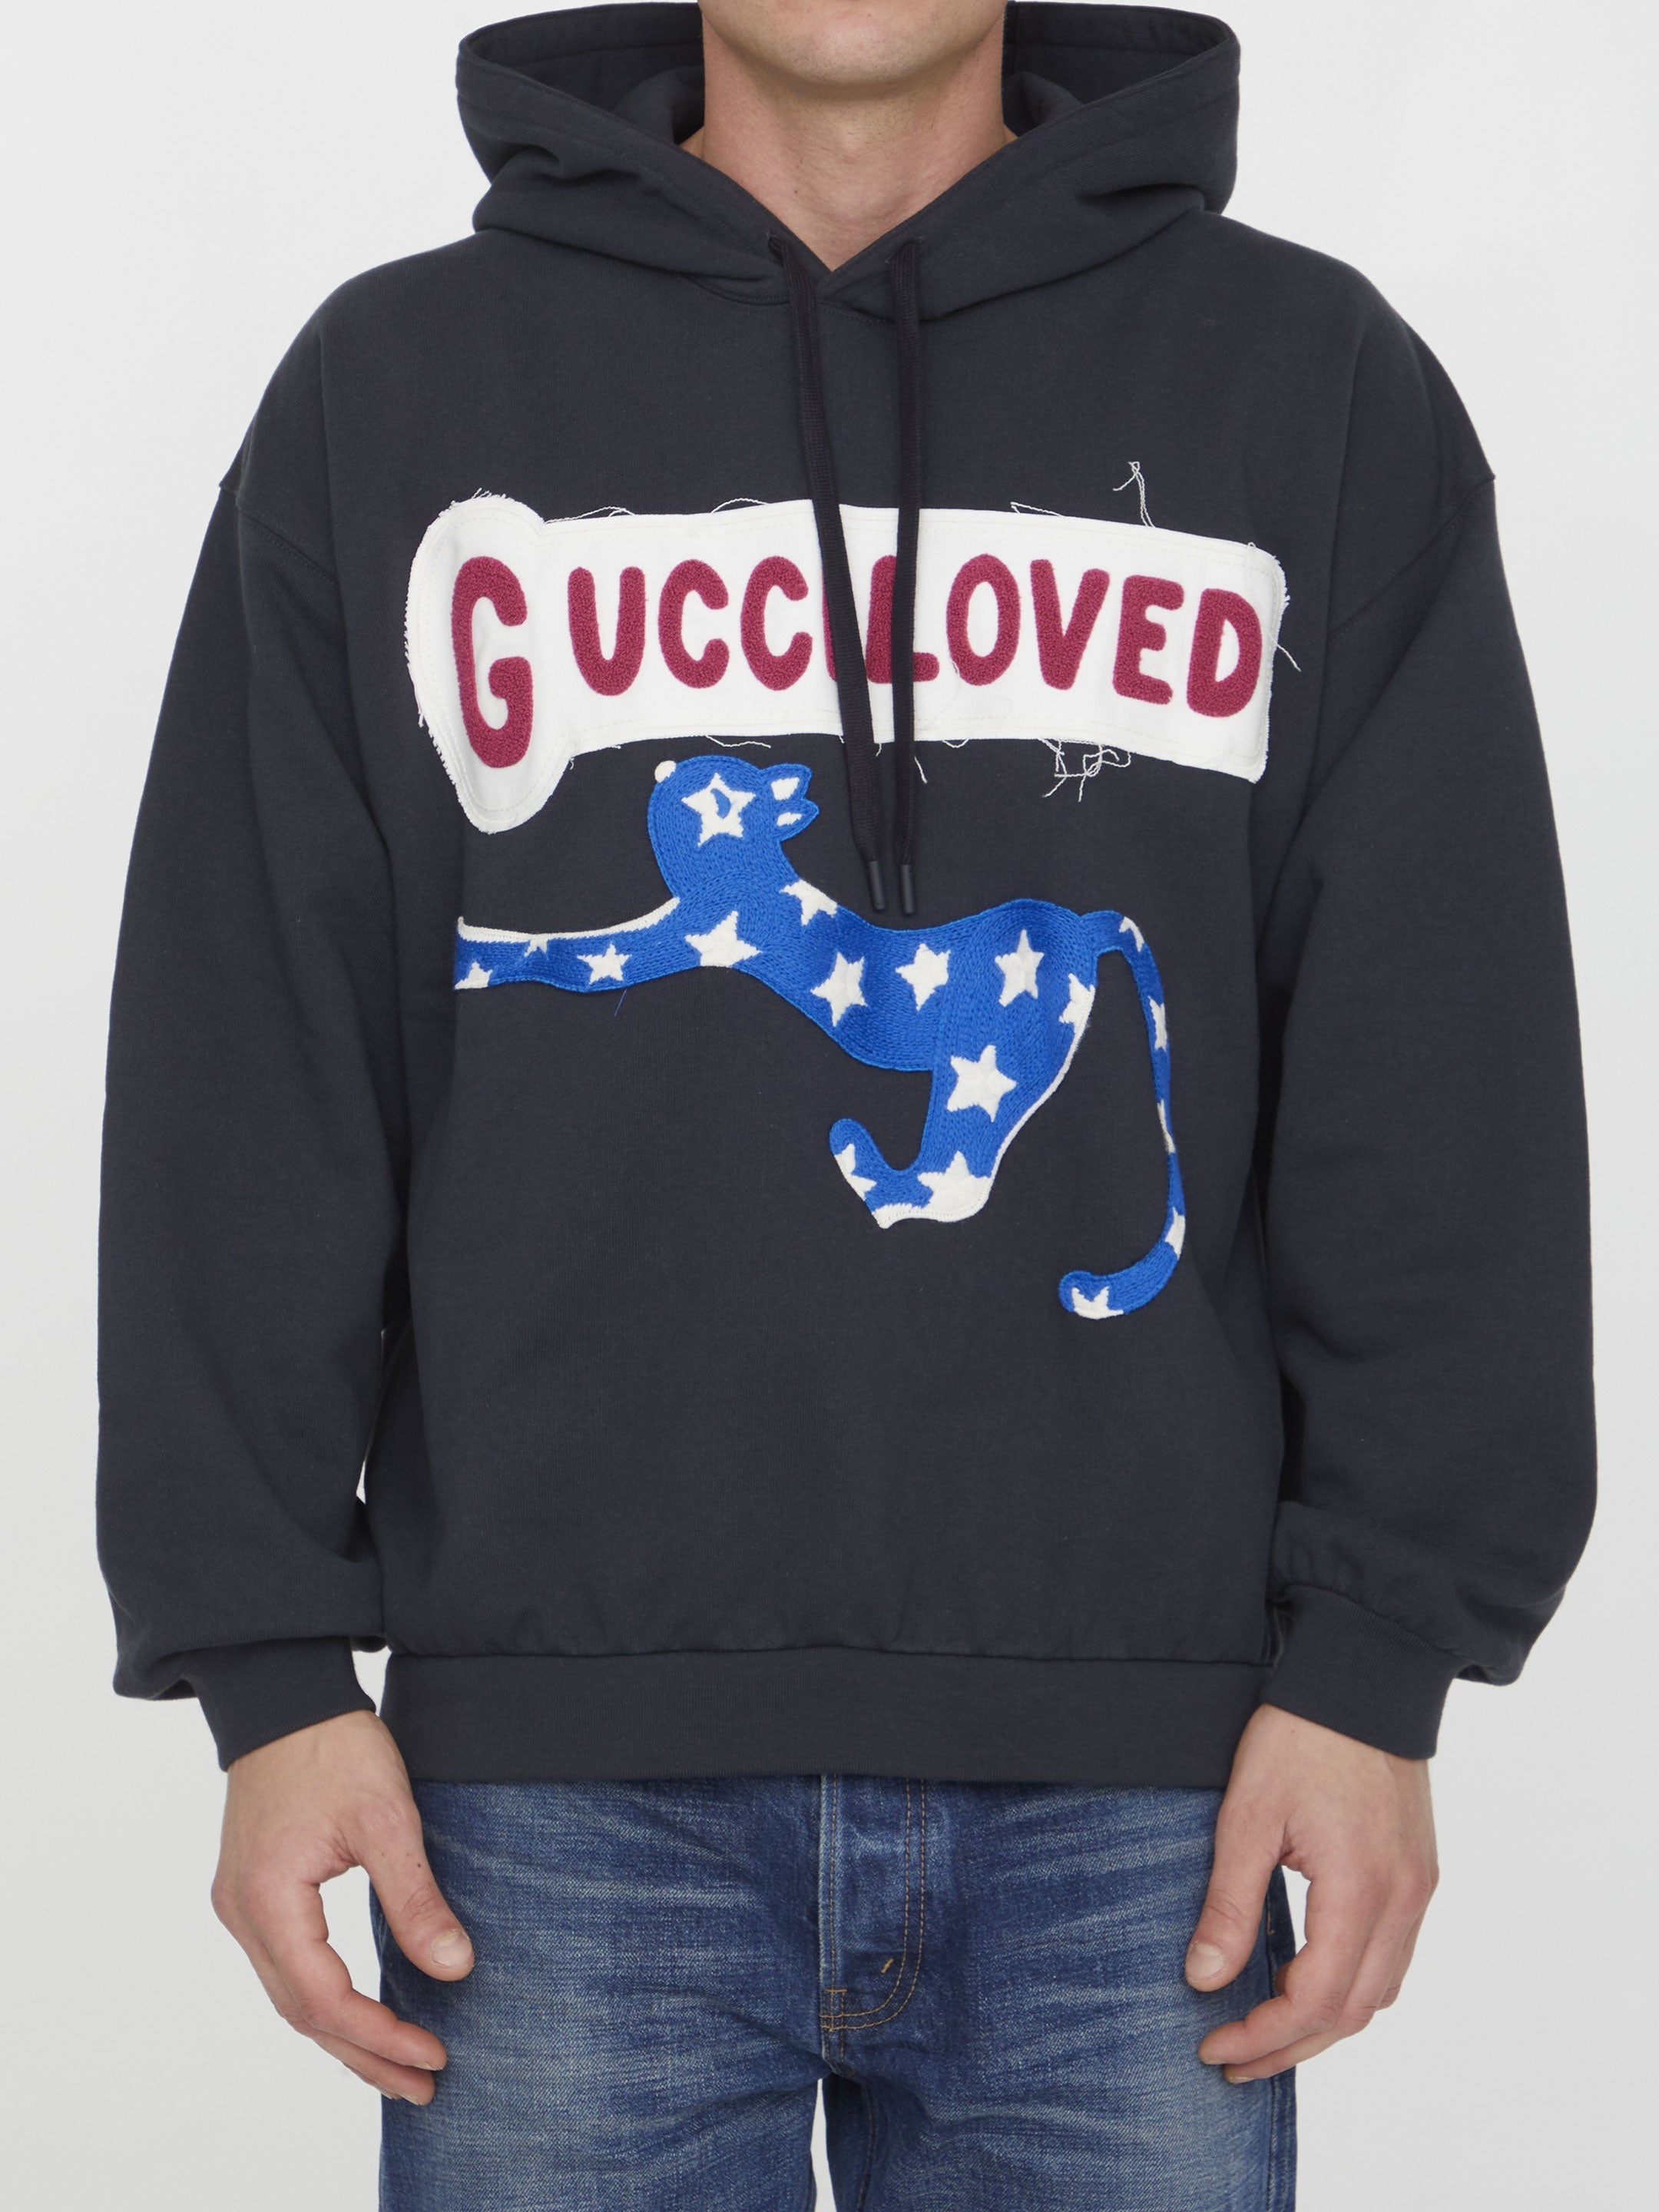 Gucci Loved hoodie